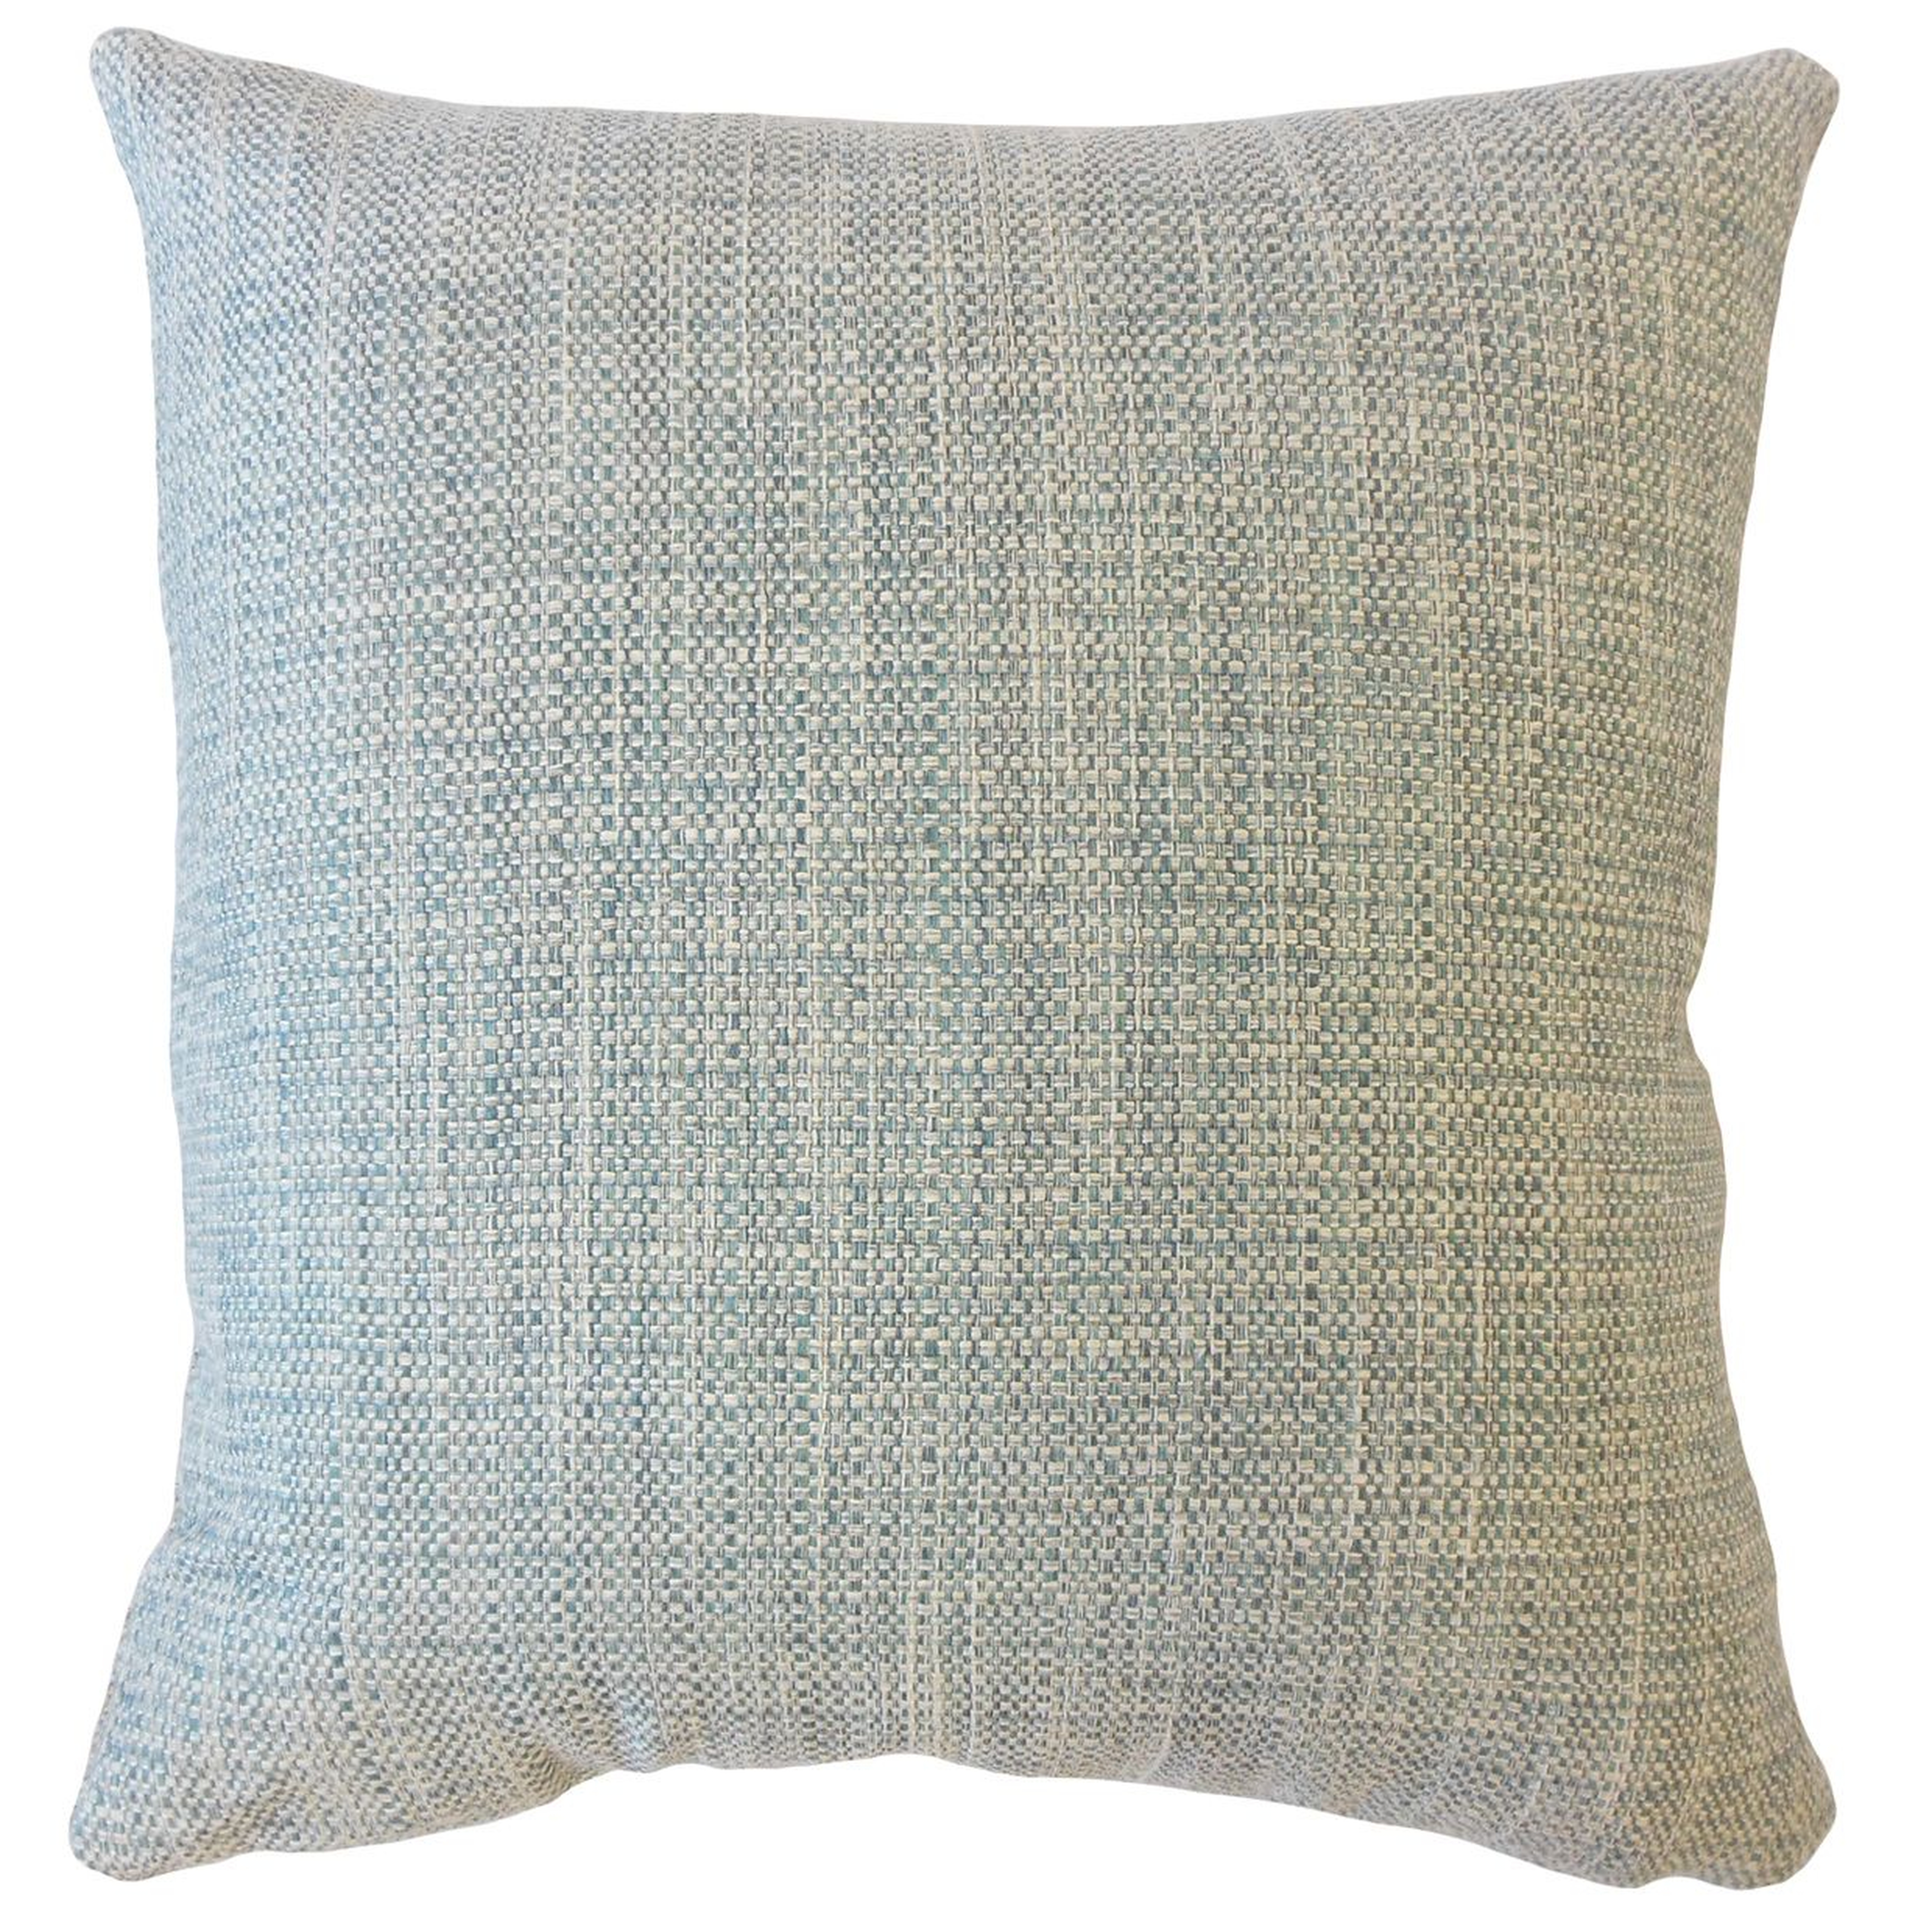 Textured Linen Pillow, Bluestone, 18" x 18" - Havenly Essentials